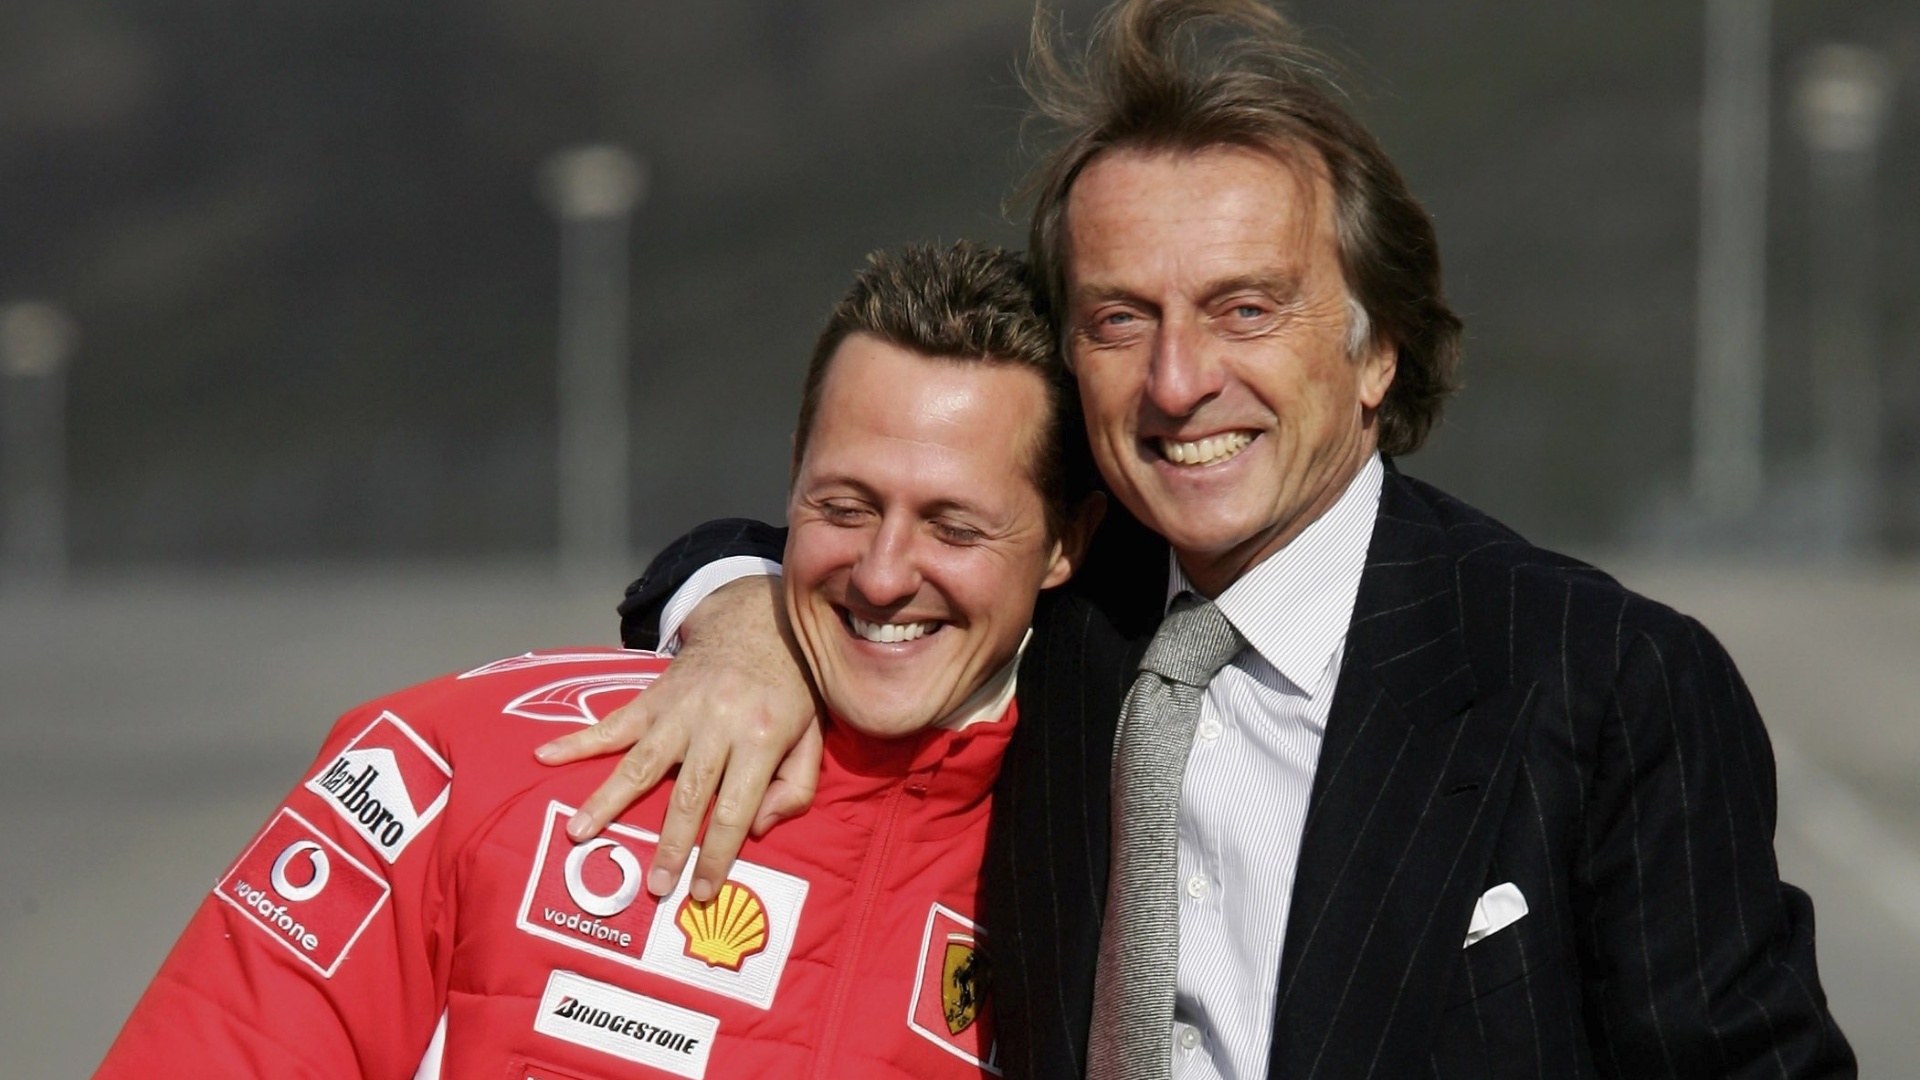 Las noticias sobre Schumacher “no son buenas”, según expresidente de Ferrari